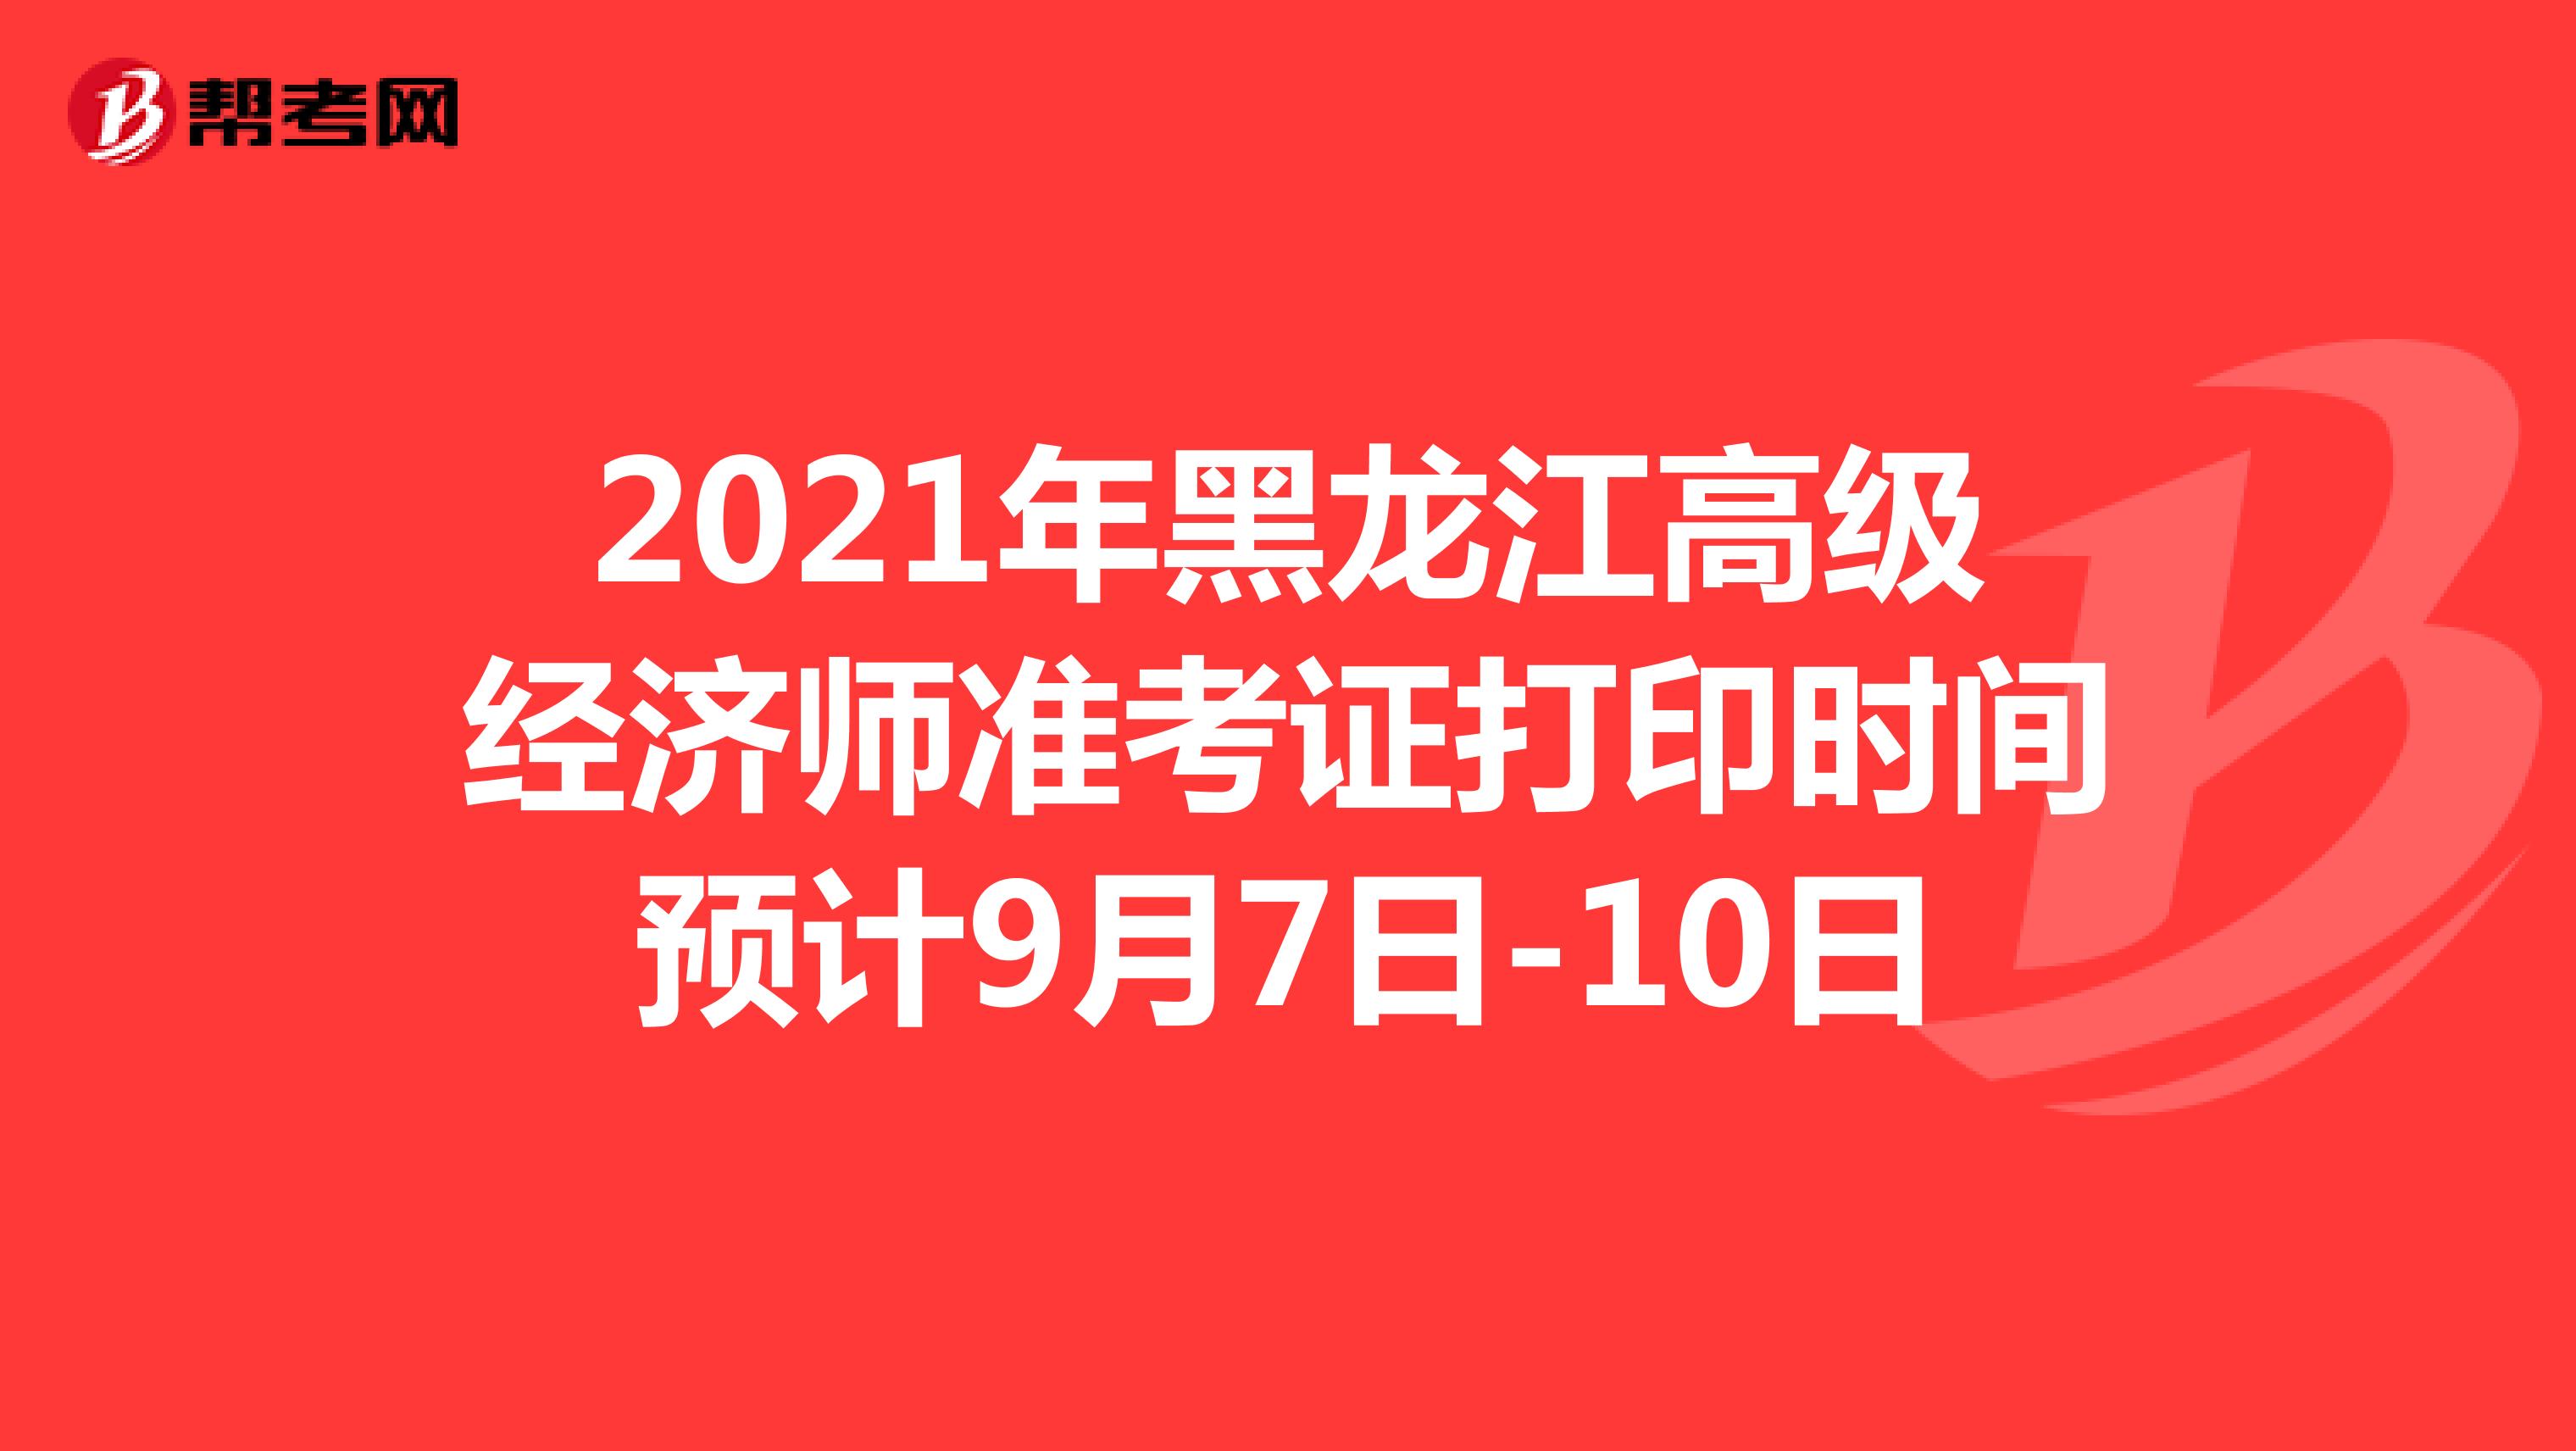 2021年黑龙江高级经济师准考证打印时间预计9月7日-10日